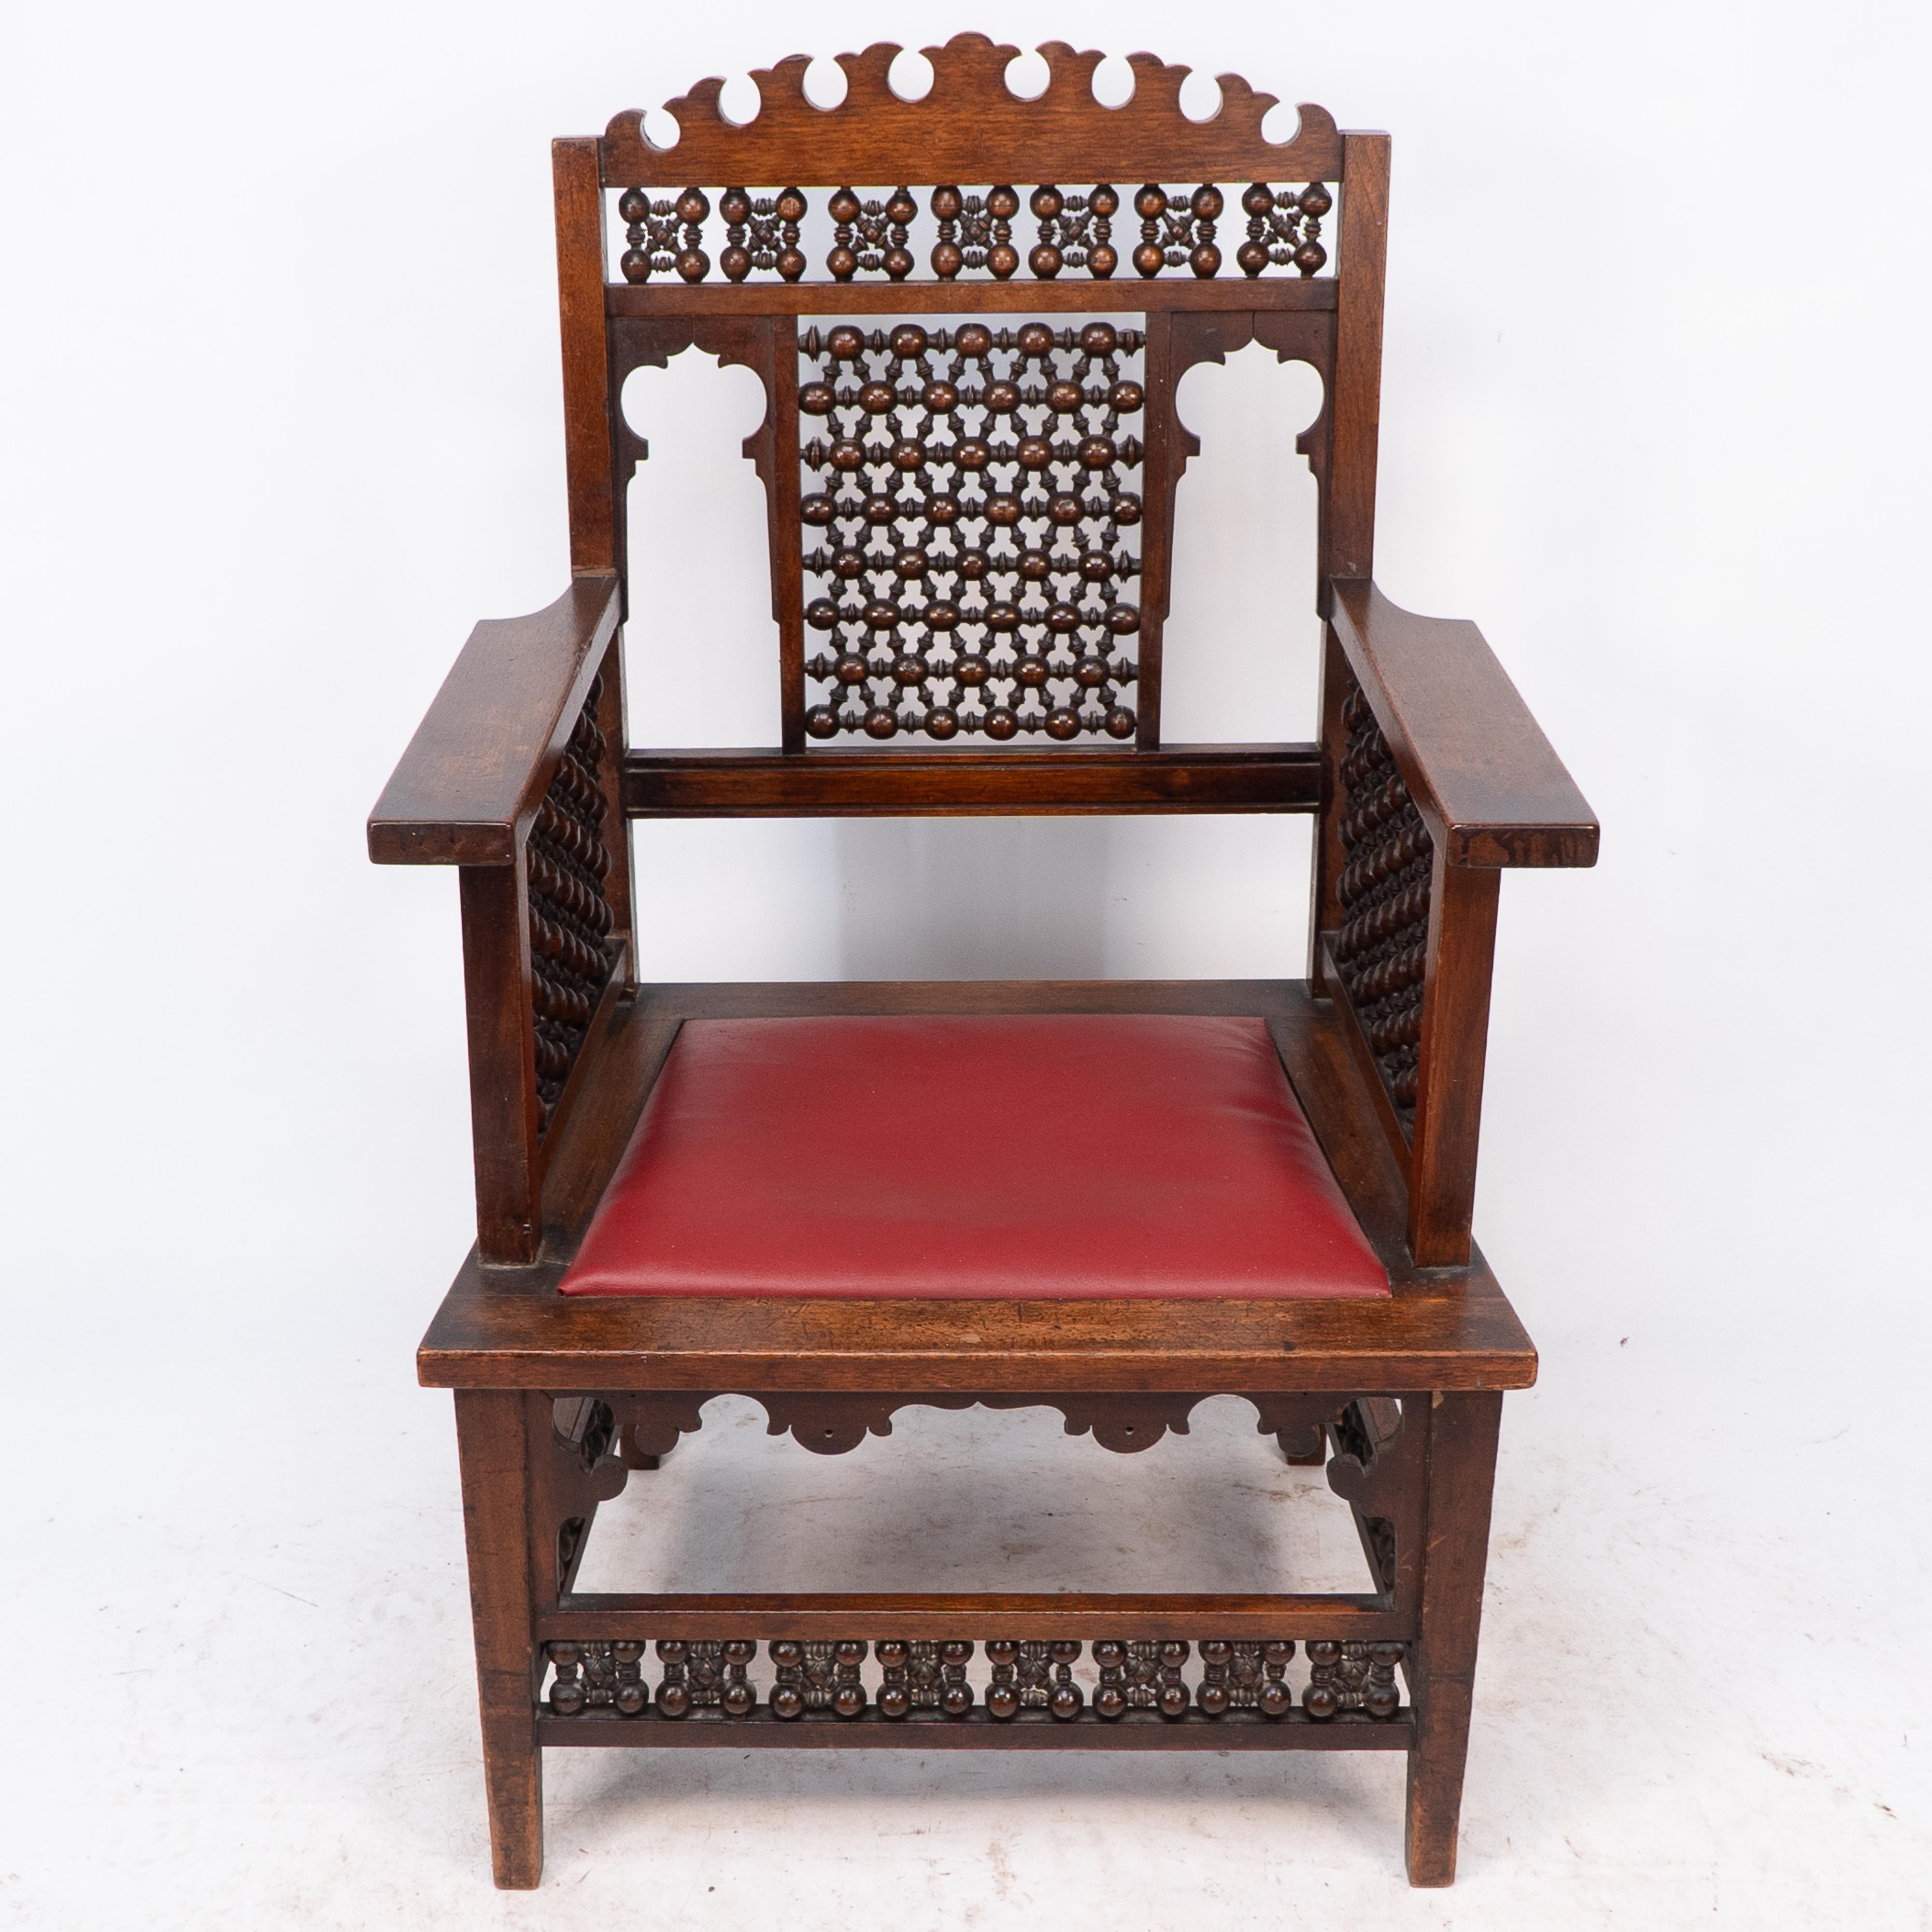 Liberty & Co. Ein Sessel aus maurischem Nussbaum mit Laubsägearbeiten an der gewölbten Oberseite und gedrechselten Mashrabiya-Details.
Die letzten beiden Bilder stammen aus: Liberty's Furniture 1875 - 1915. Die Geburt des britischen Interior